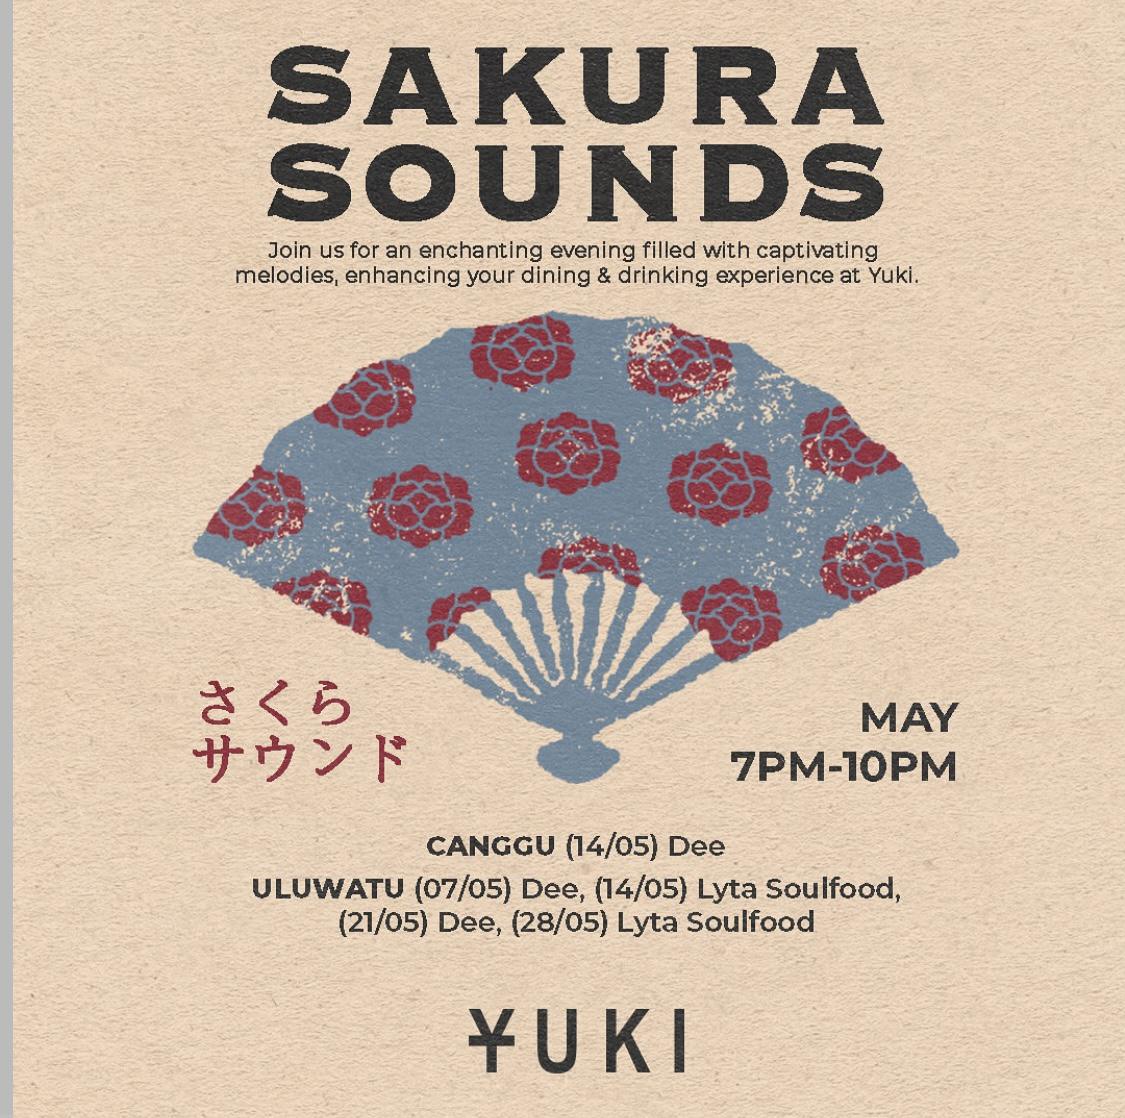 Sakura sounds at YUKI